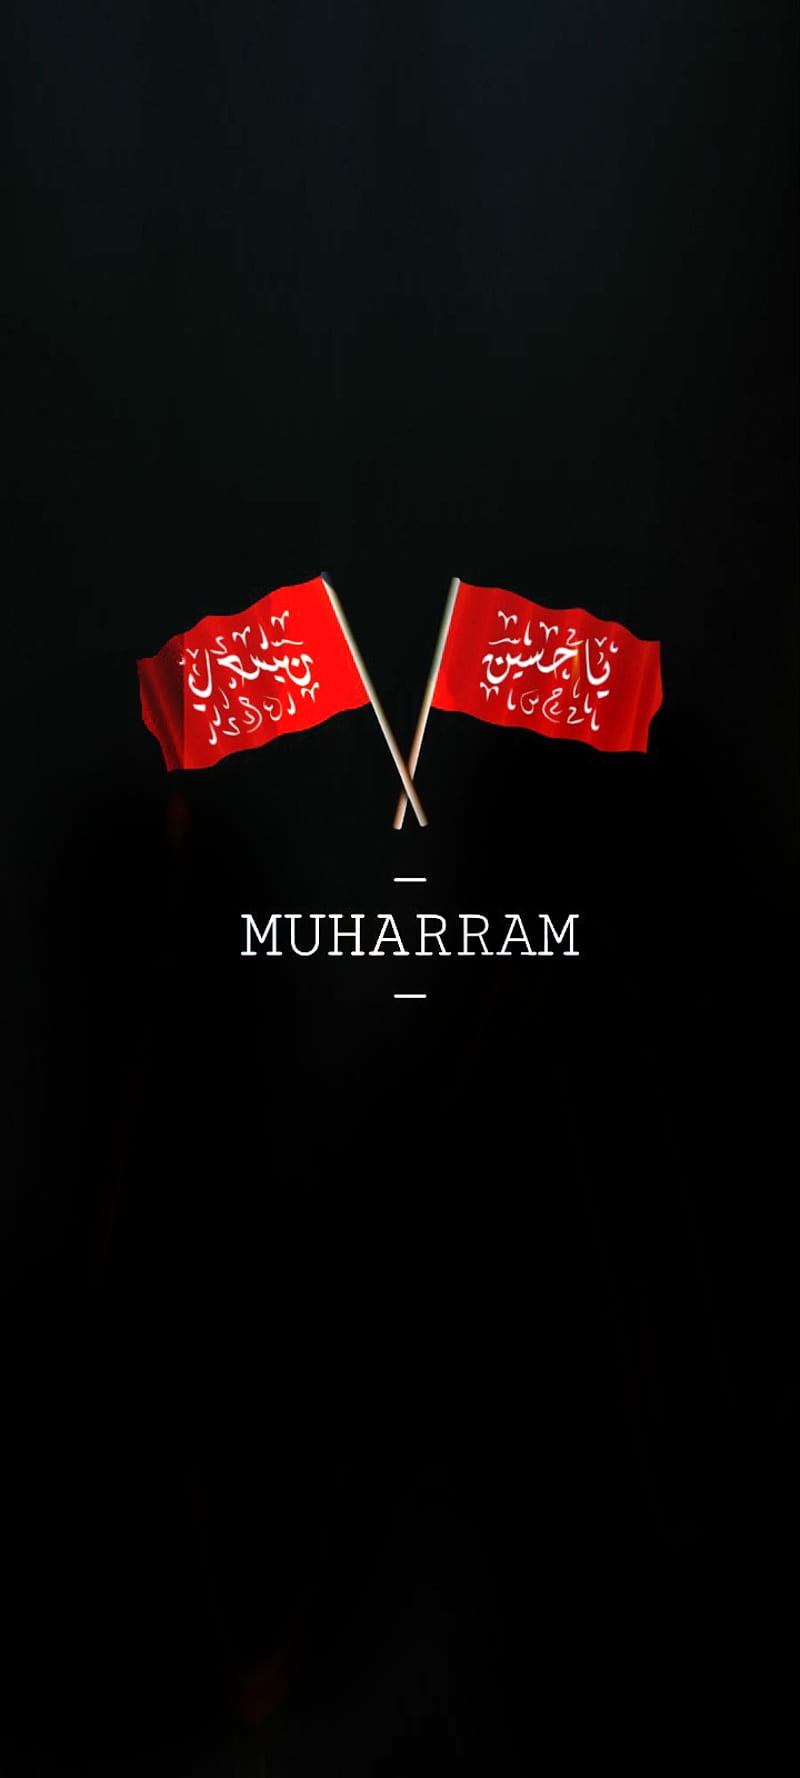 Ya hussain, 10 muharram, muharram, red, respect muharram, HD phone wallpaper  | Peakpx